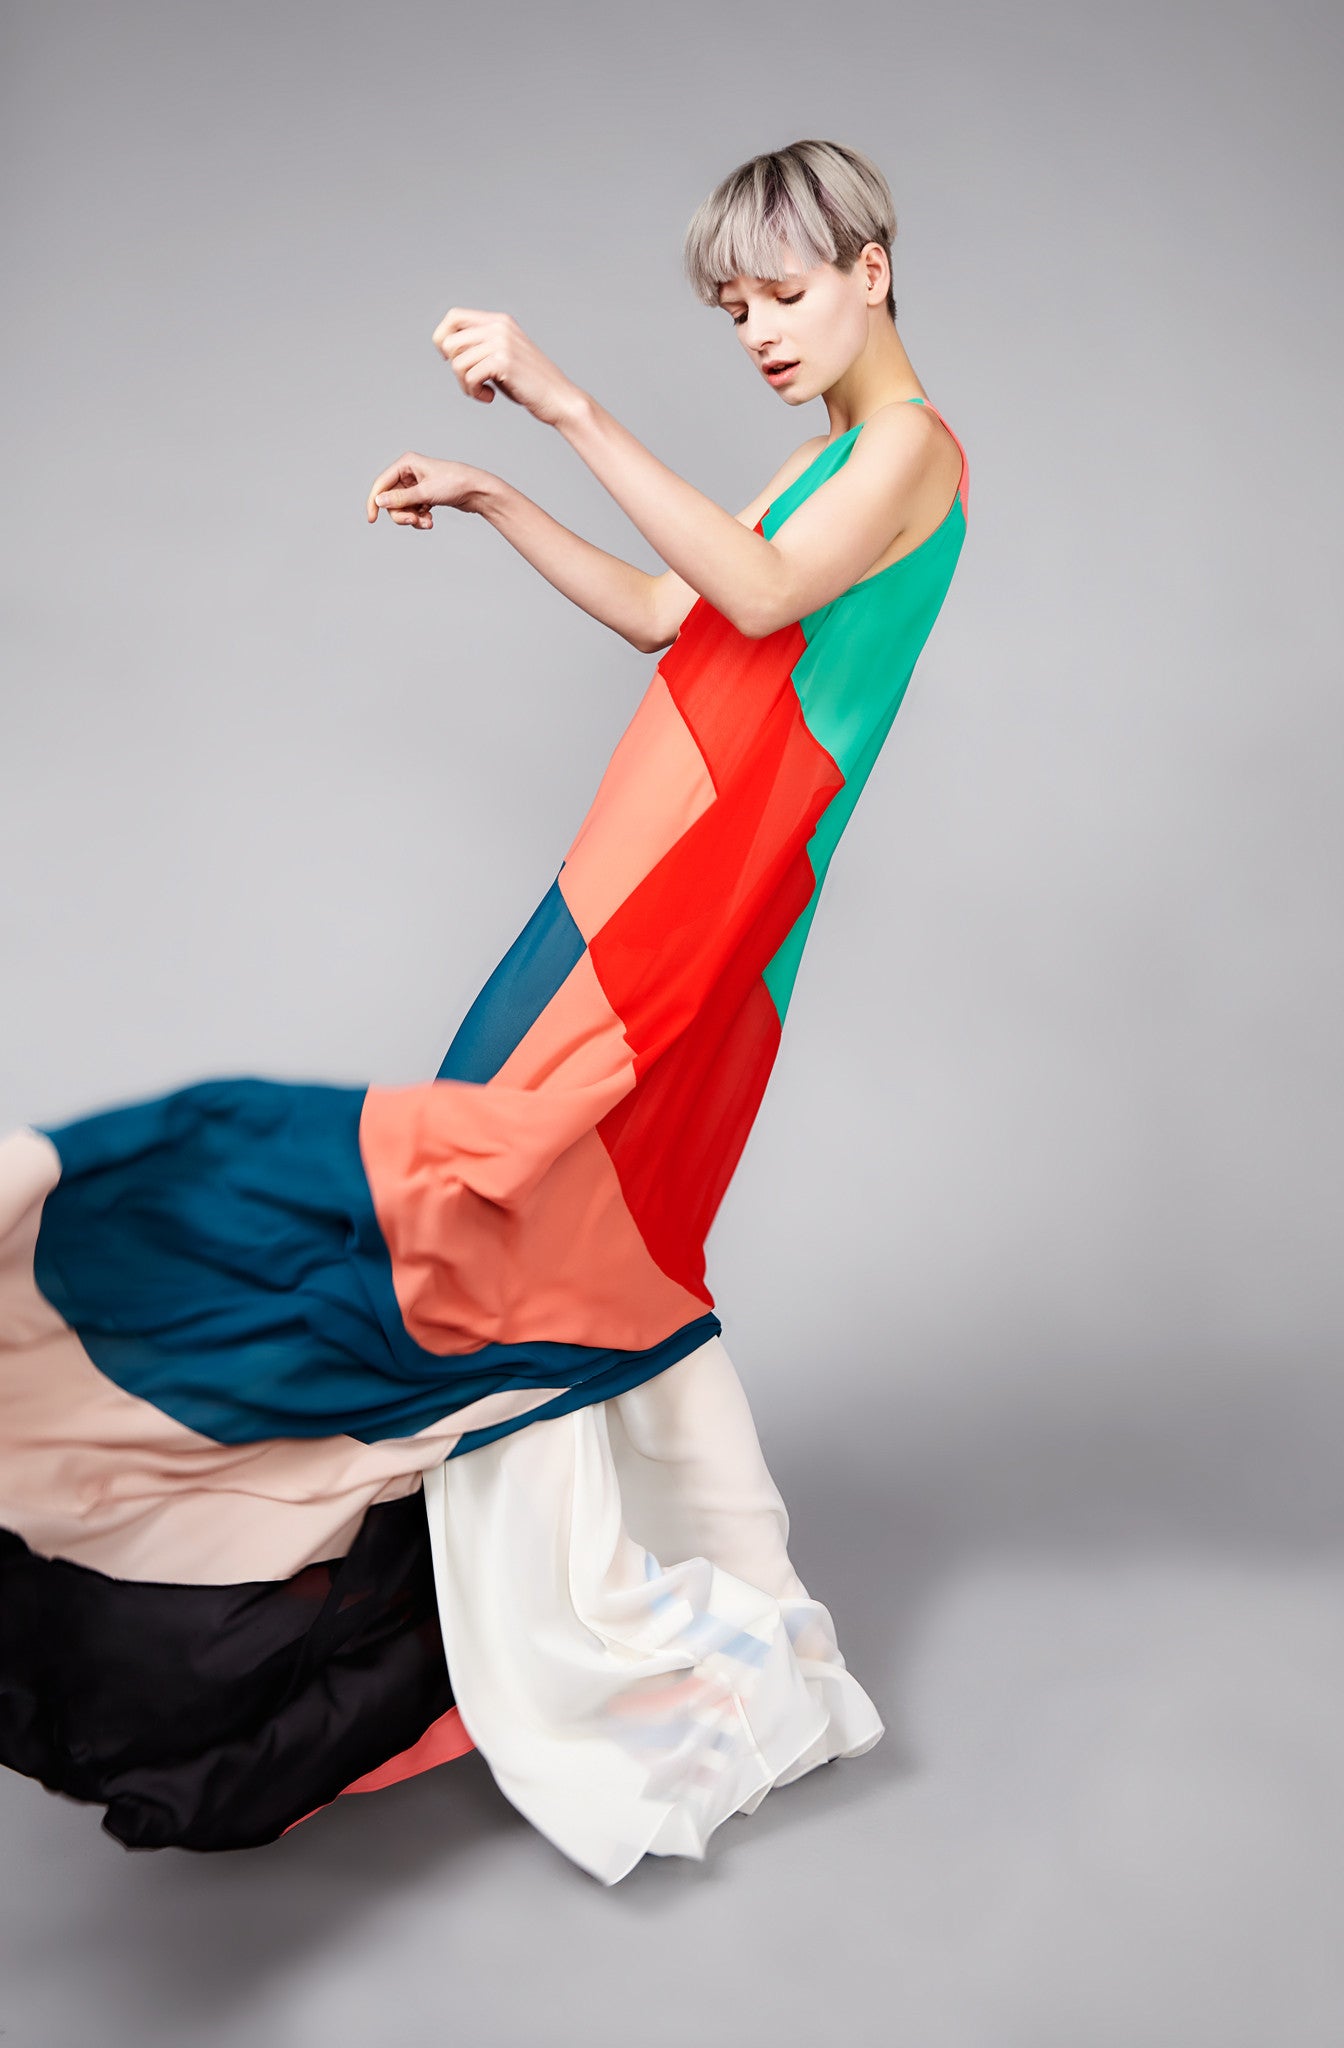 Multicoloured "Helter" One Shoulder Dress